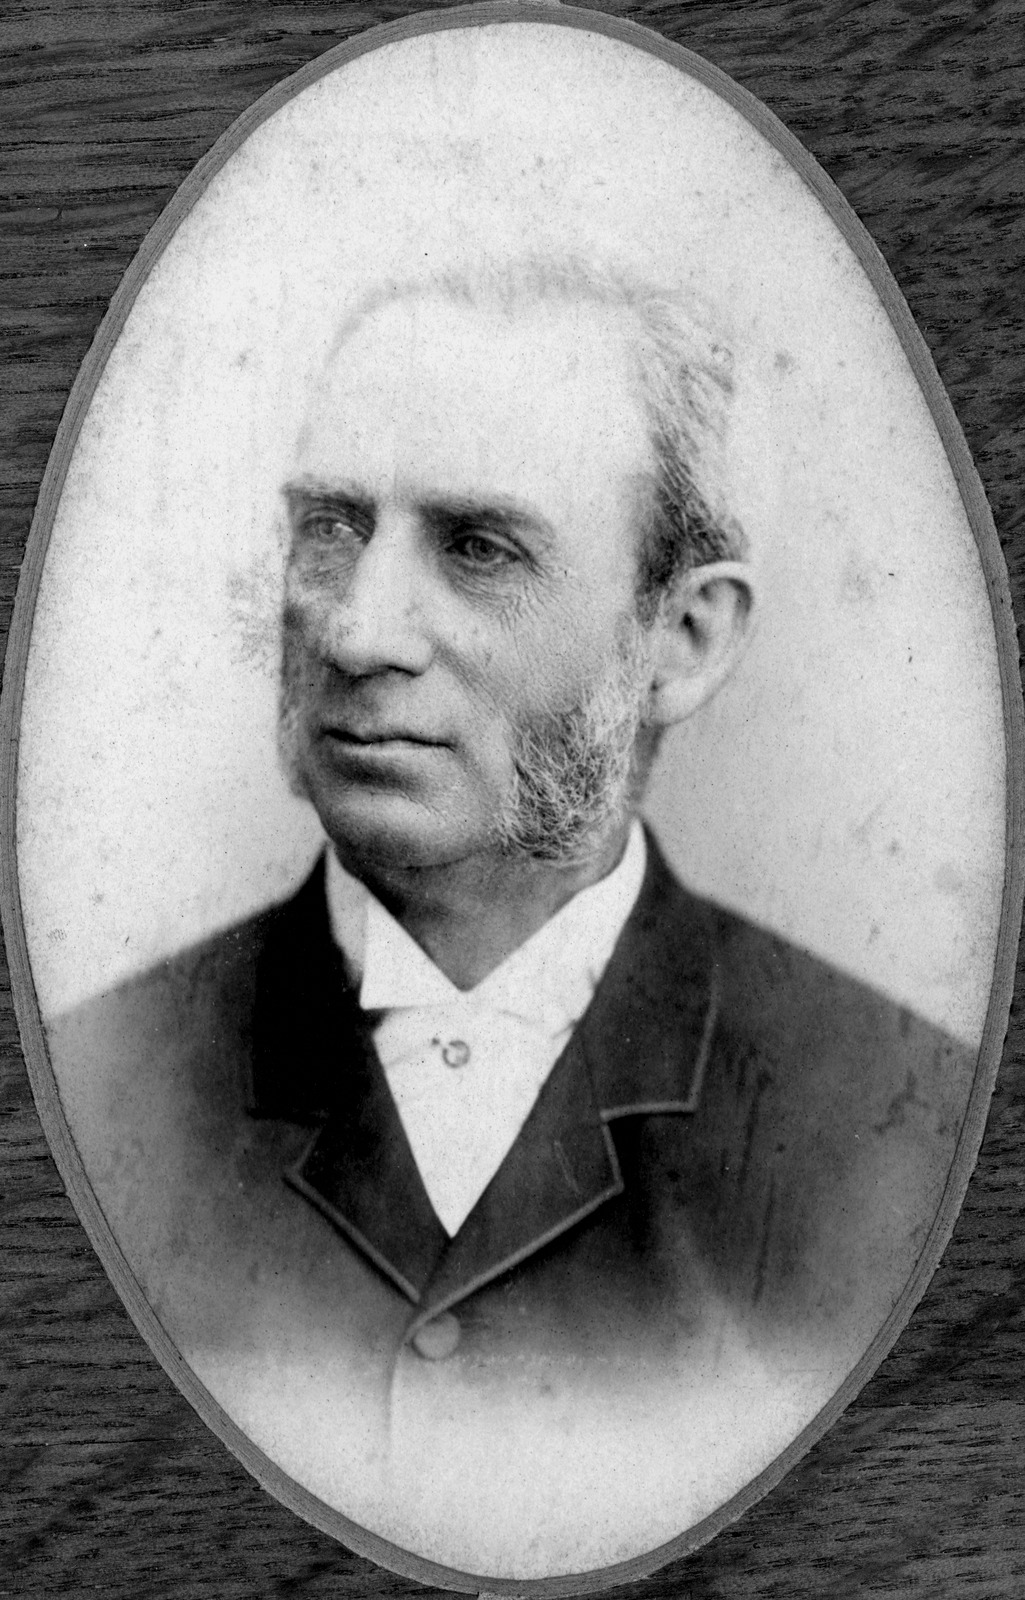 William Leworthy Goode Drew, C. M. G.